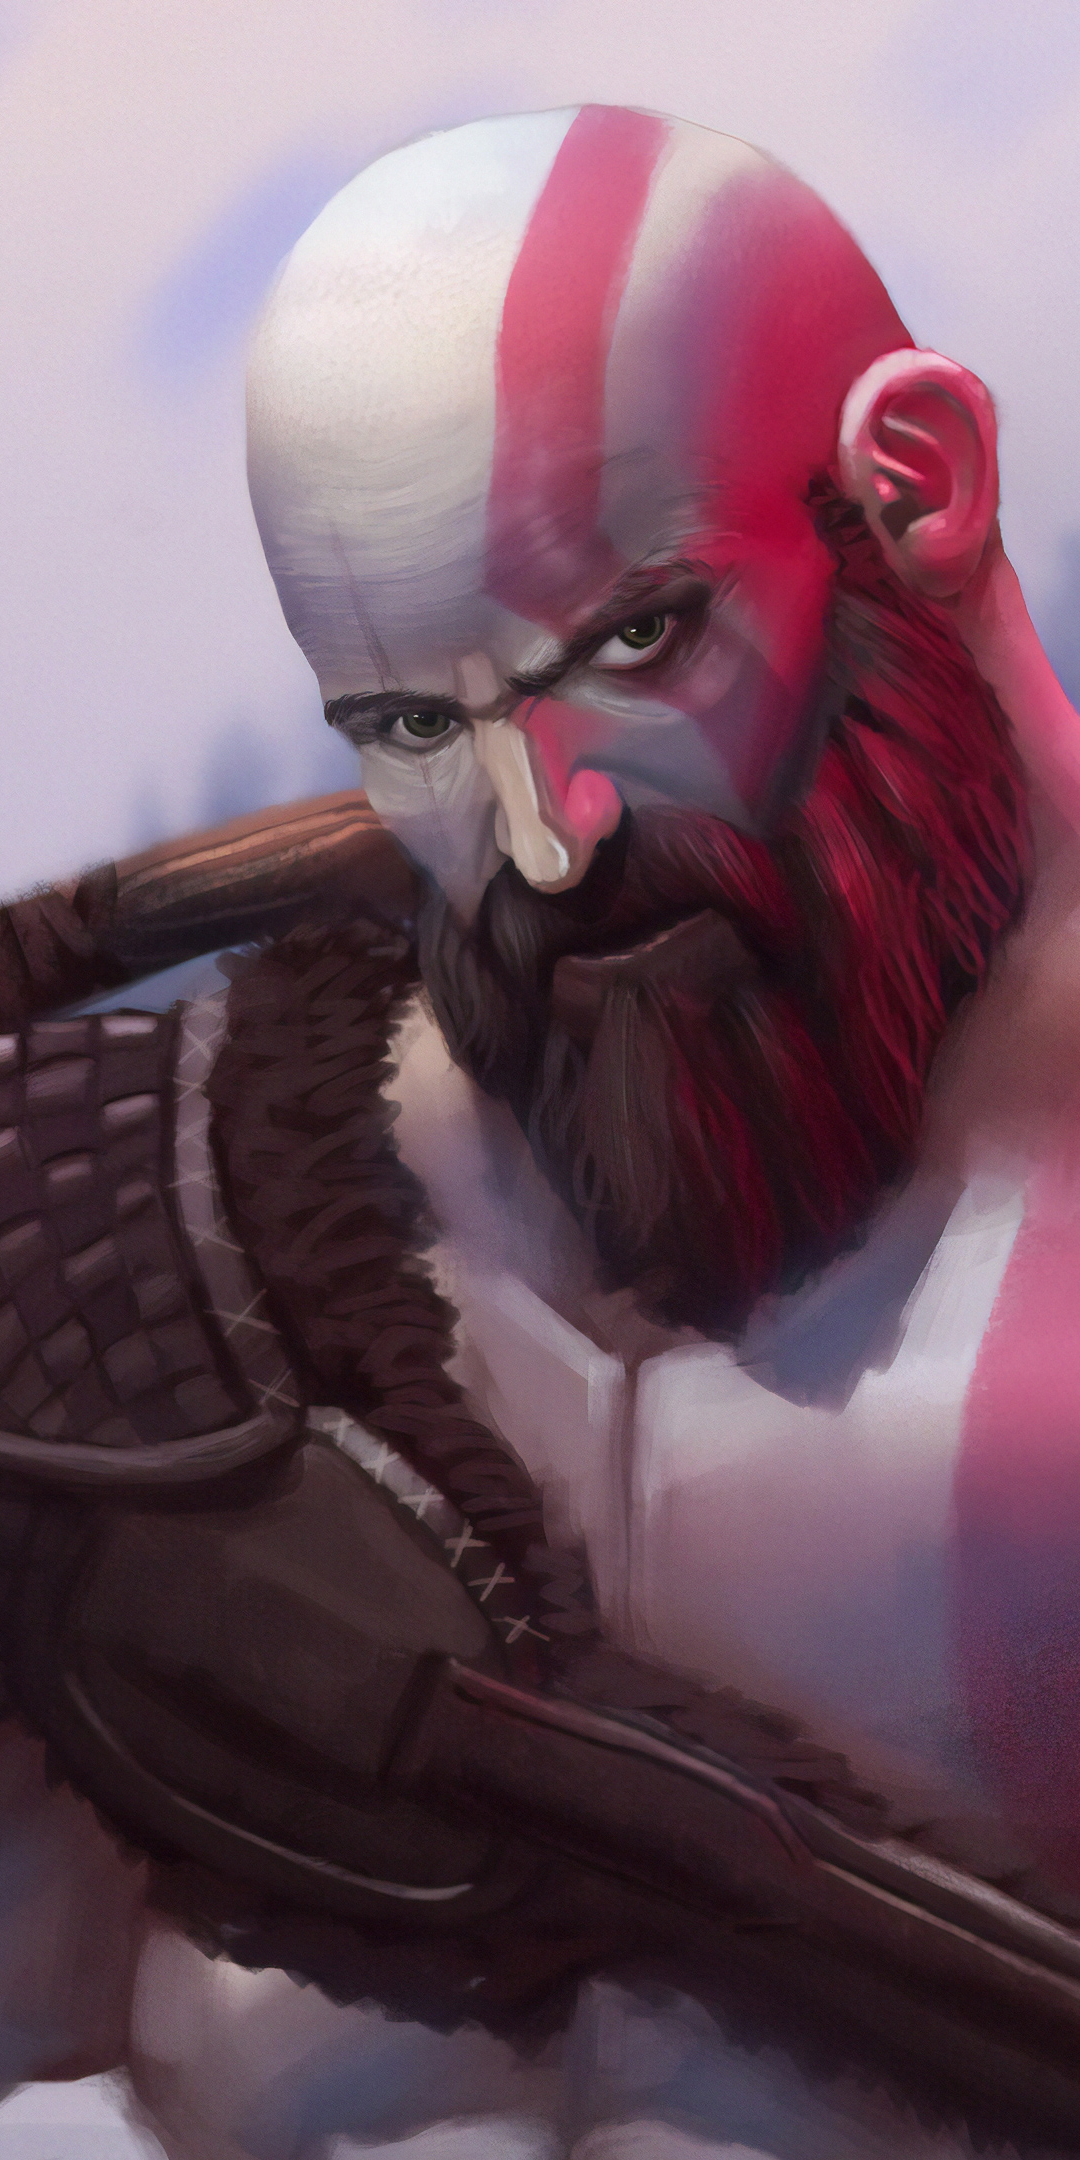 Descarga gratuita de fondo de pantalla para móvil de God Of War, Guerrero, Videojuego, Kratos (Dios De La Guerra).